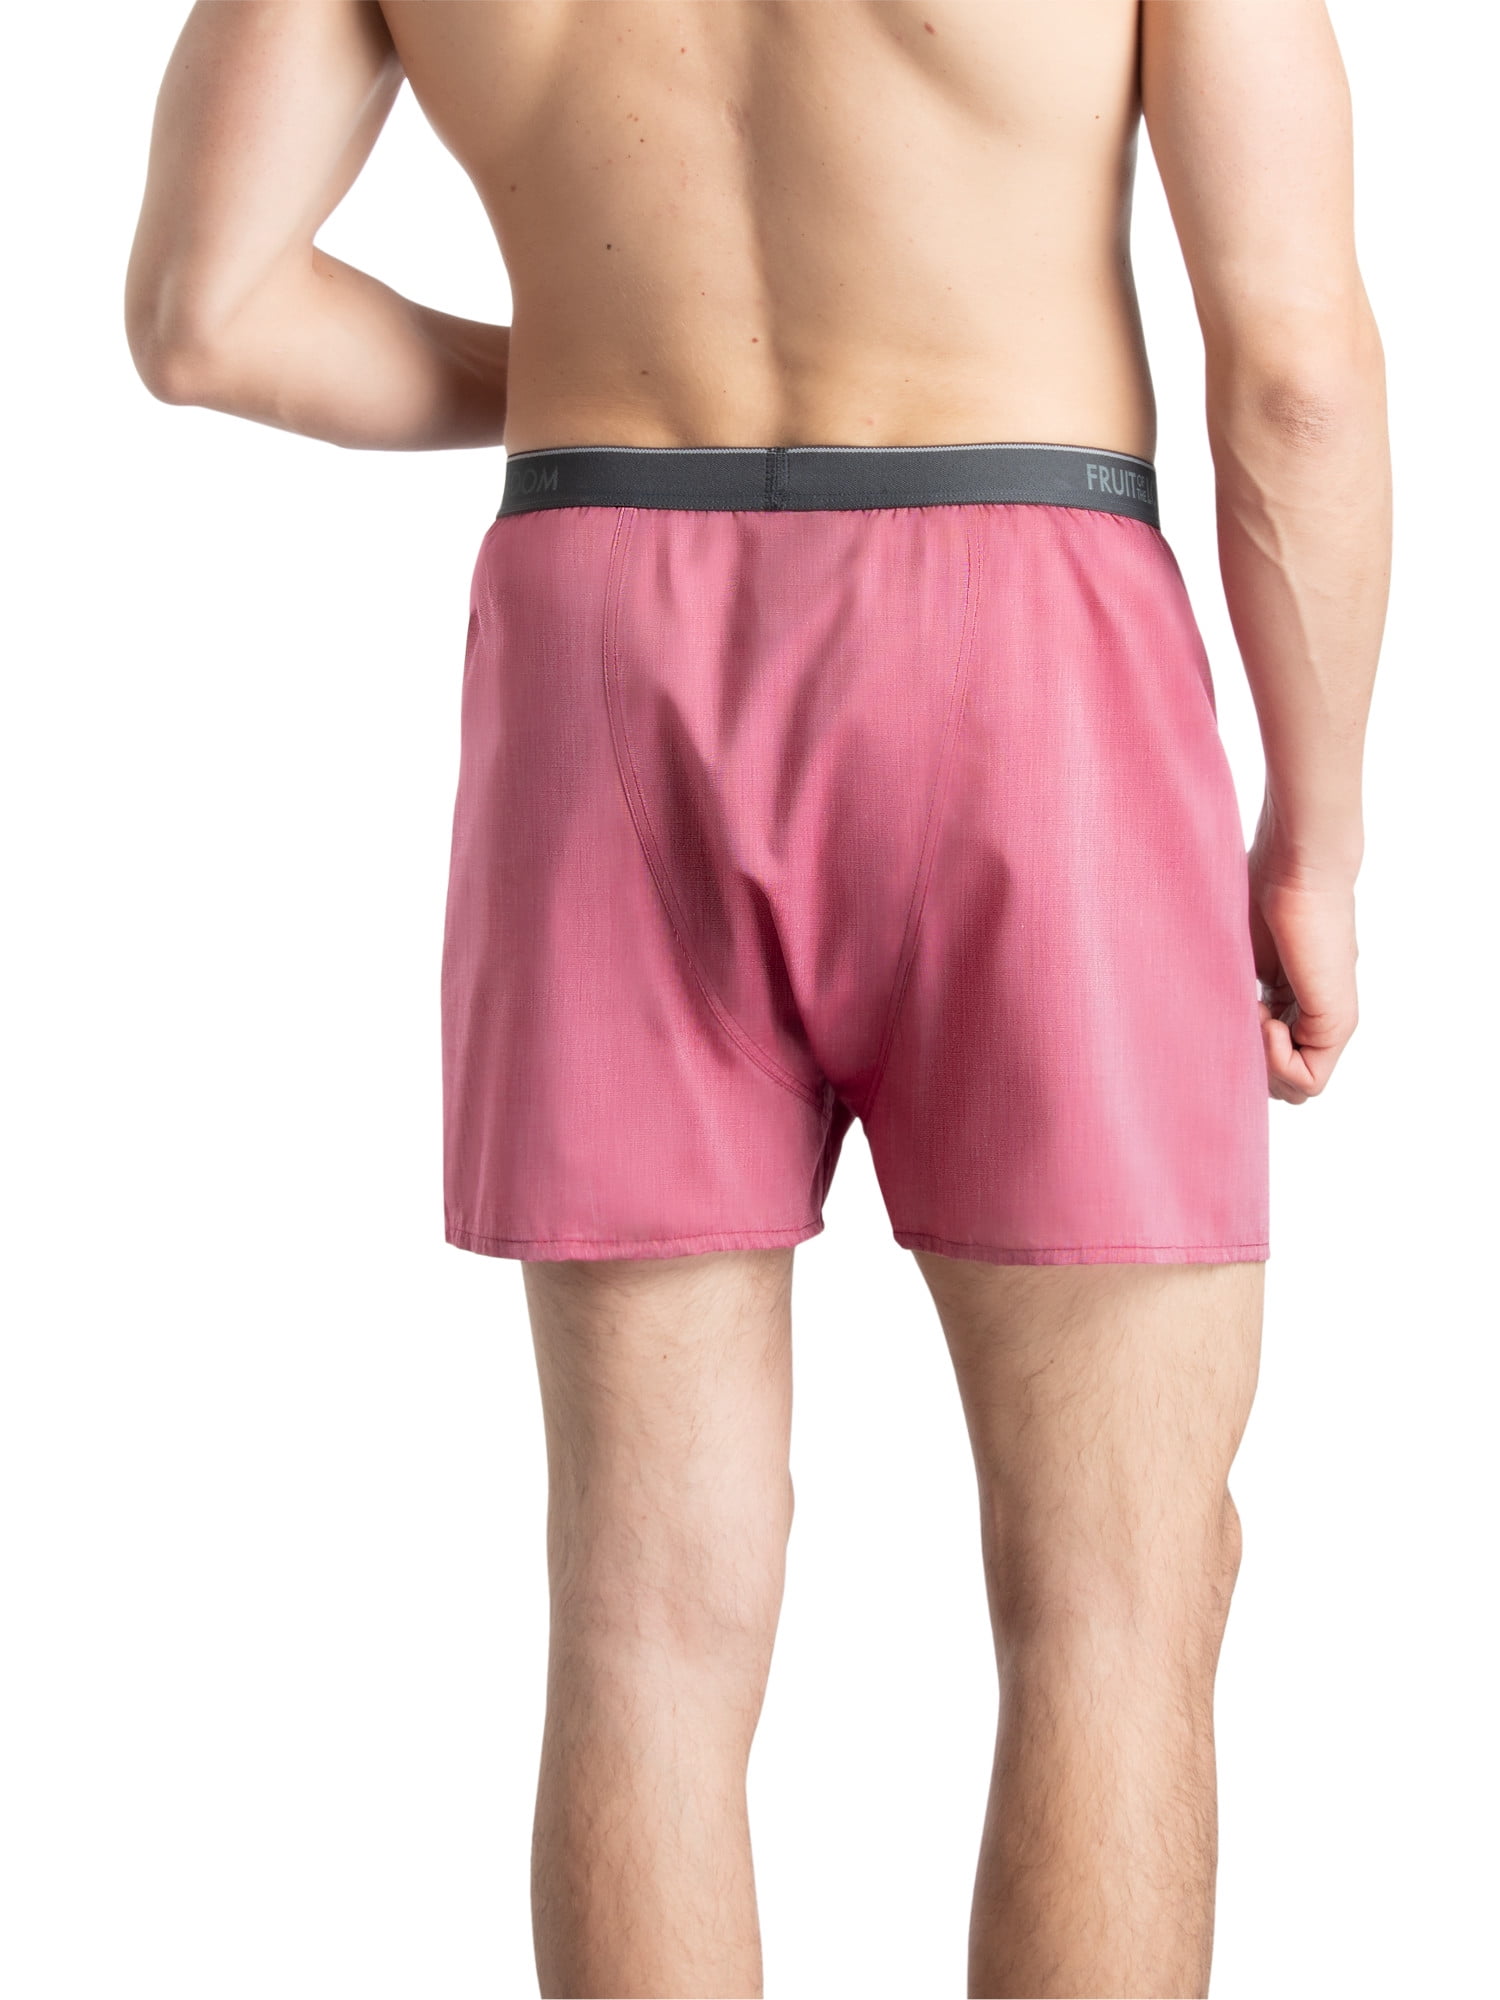 Men's Fruit Of The Loom Underwear Briefs: Pink Neon